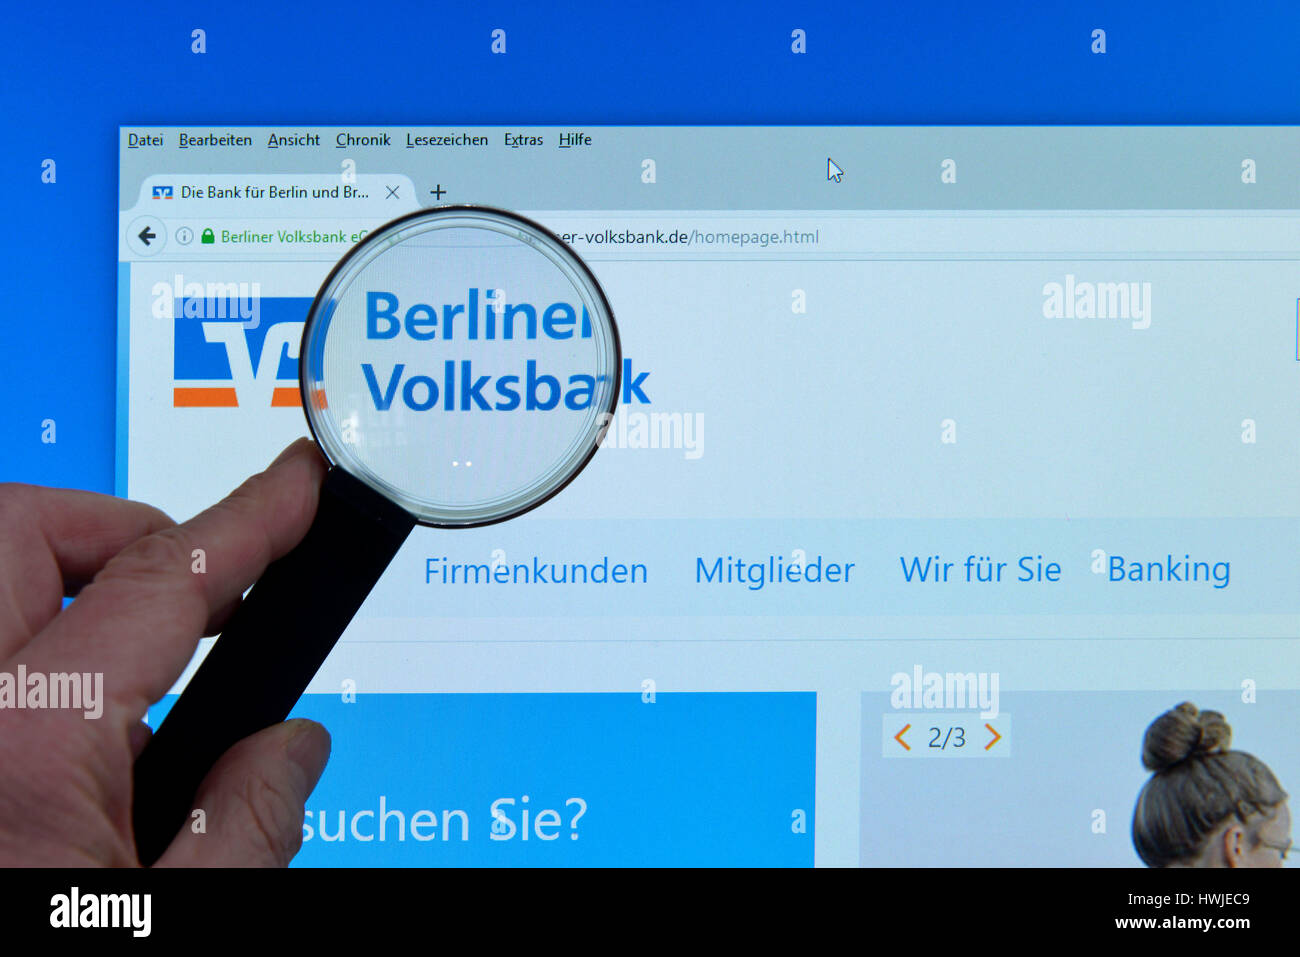 Berliner Volksbank, Website, Internet, Bildschirm, Lupe, Hand Stock Photo